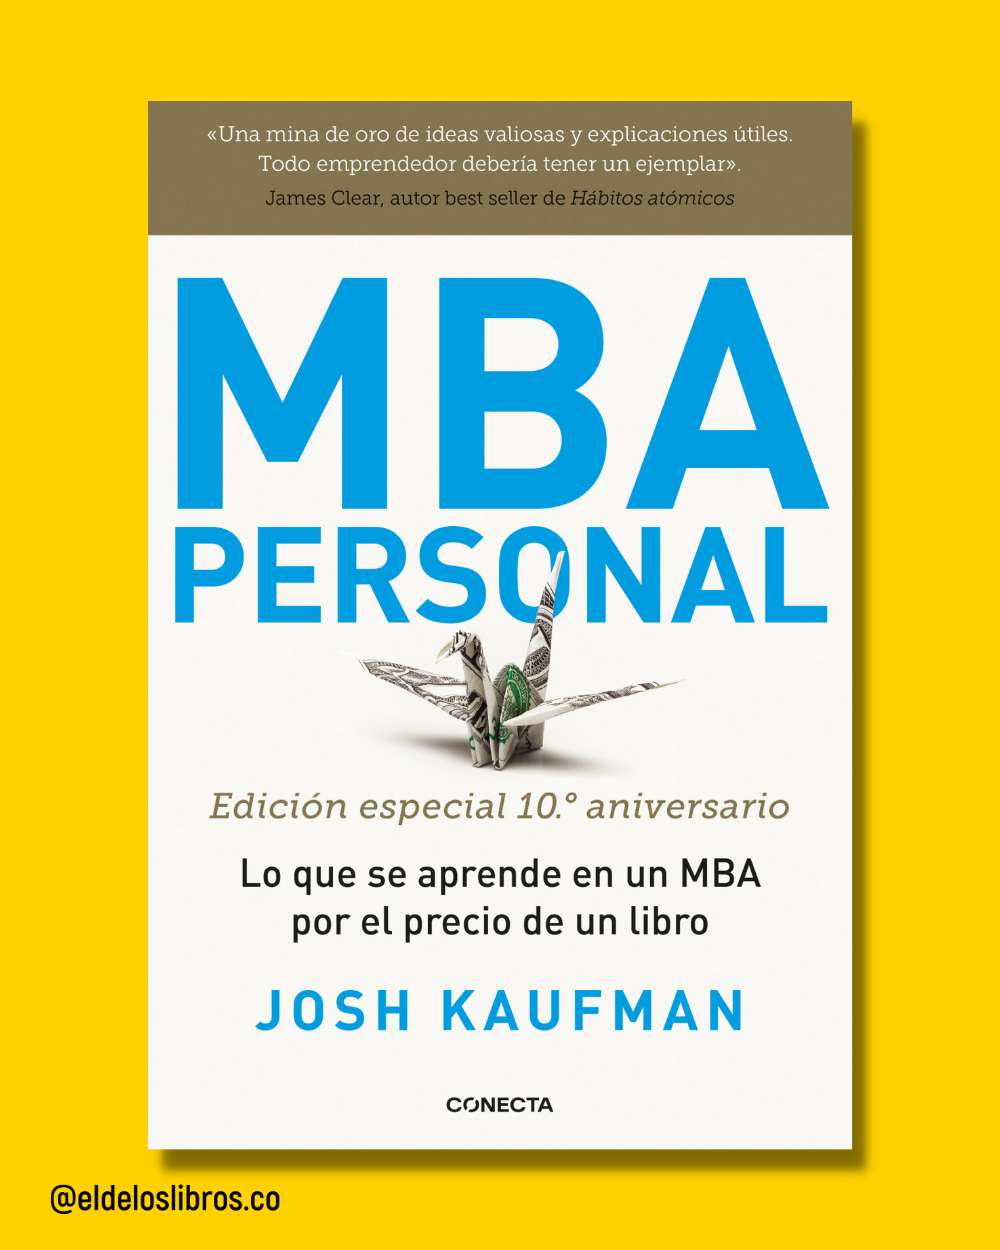 MBA personal (edición especial 10.° aniversario)